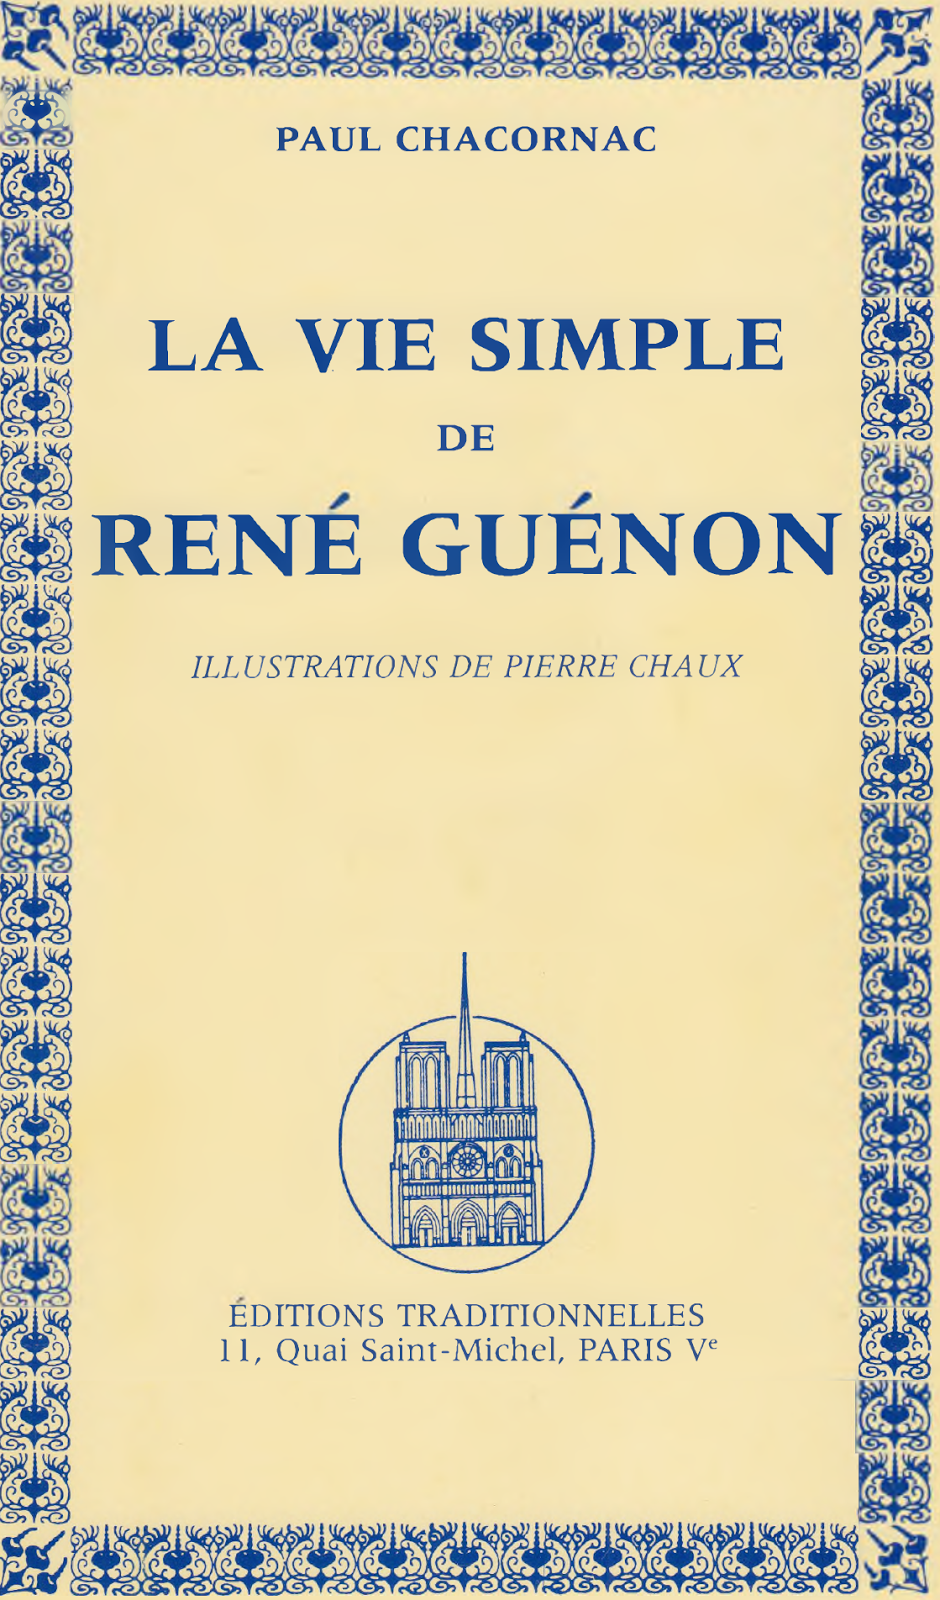 Paul Chacornac - La vie simple de René Guénon - Éditions traditionnelles